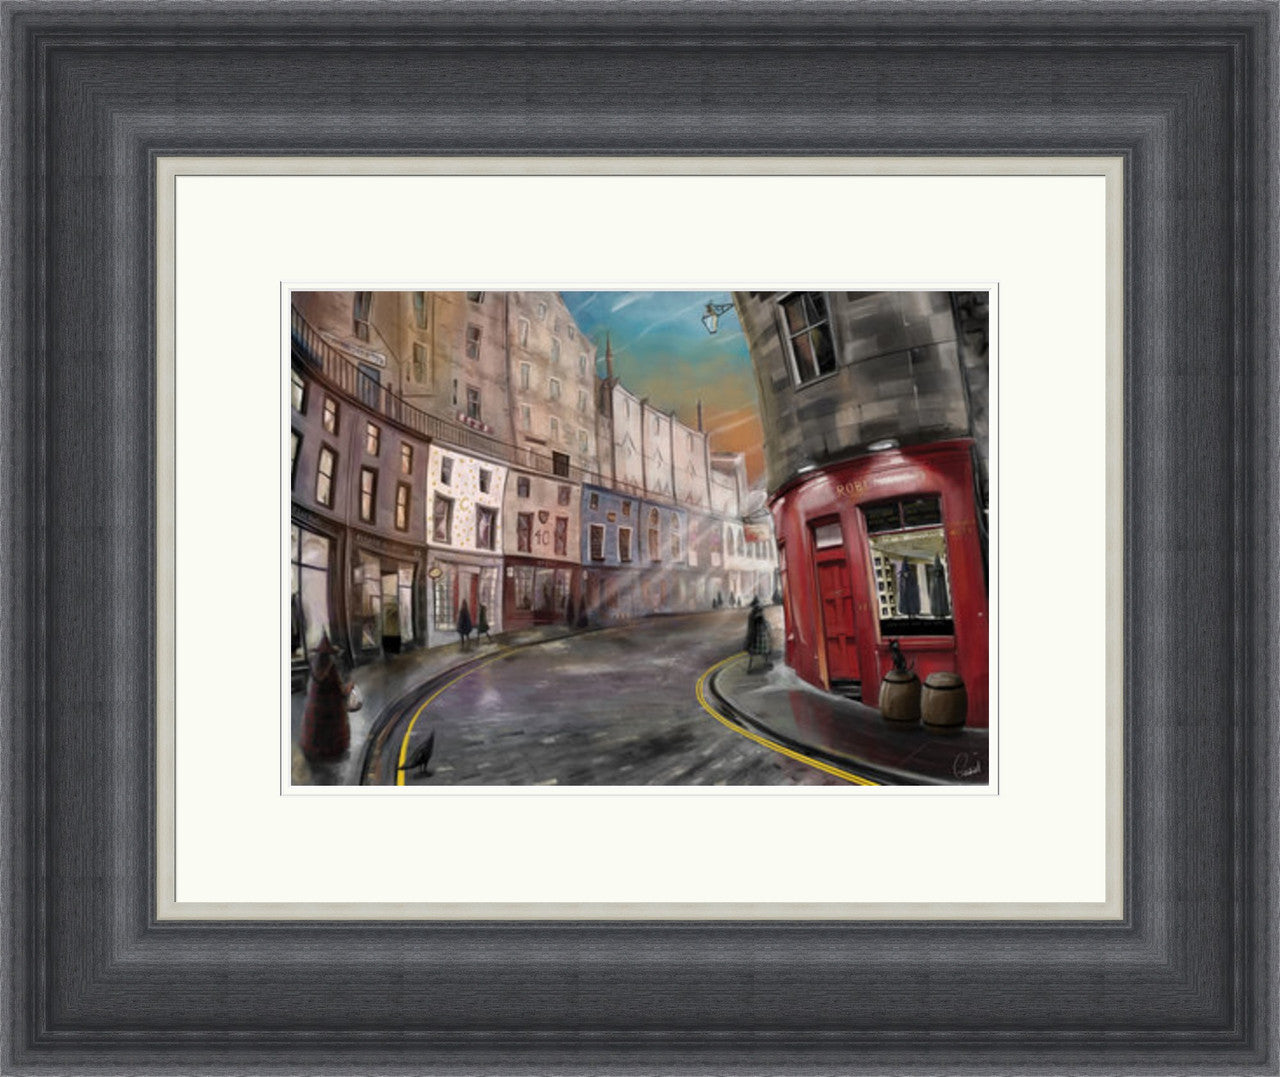 Victoria Alley, Edinburgh by Garabart